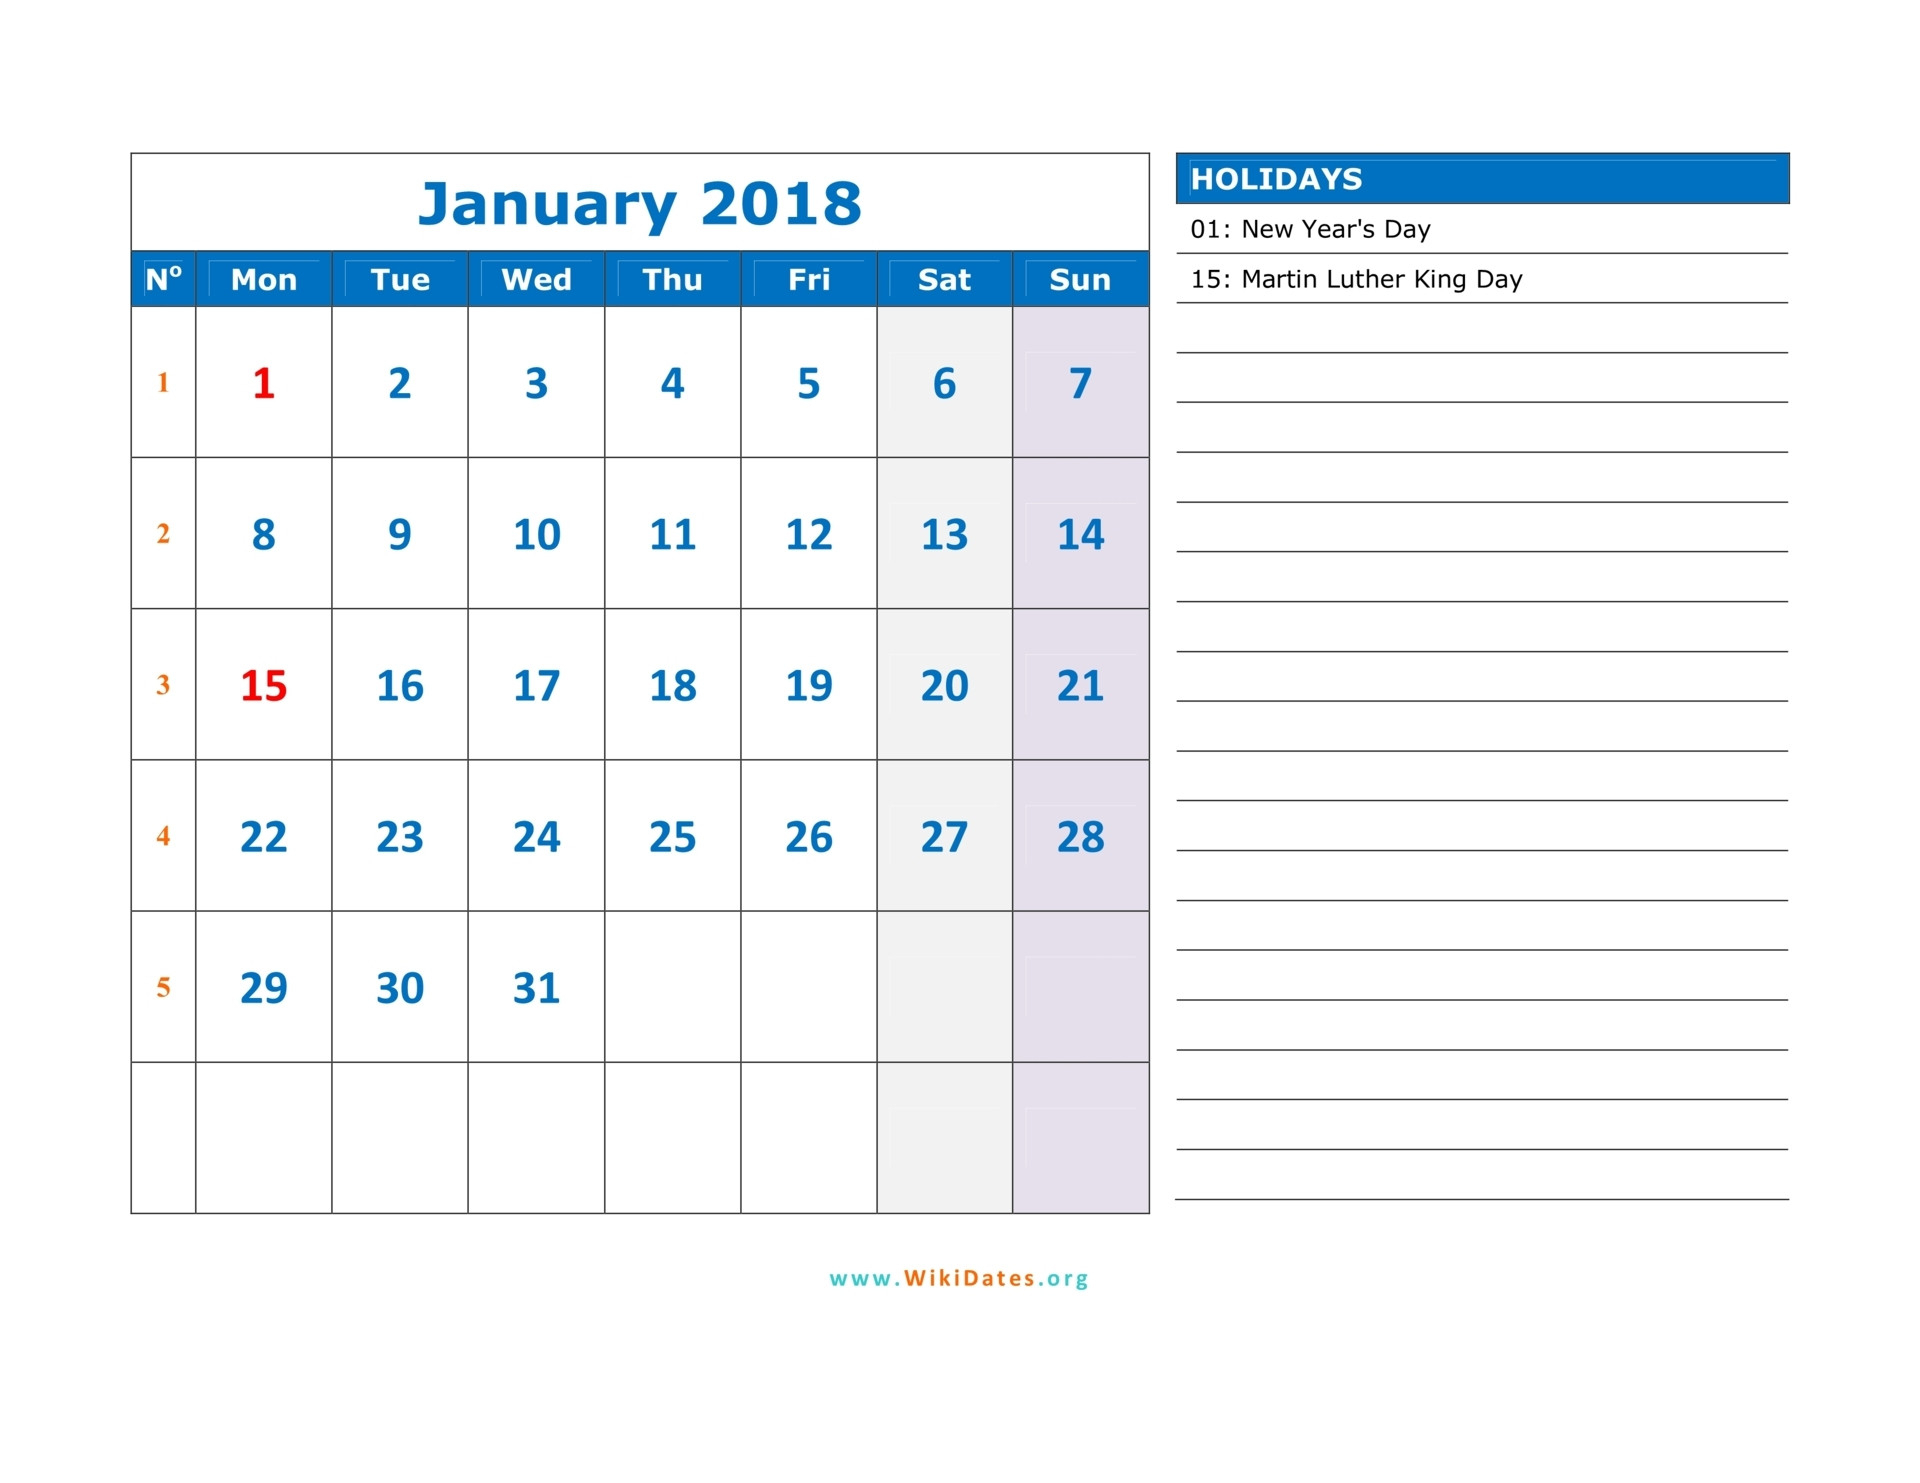 12 Month Financial Year Calendar 18 To 19 Template Calendar Design